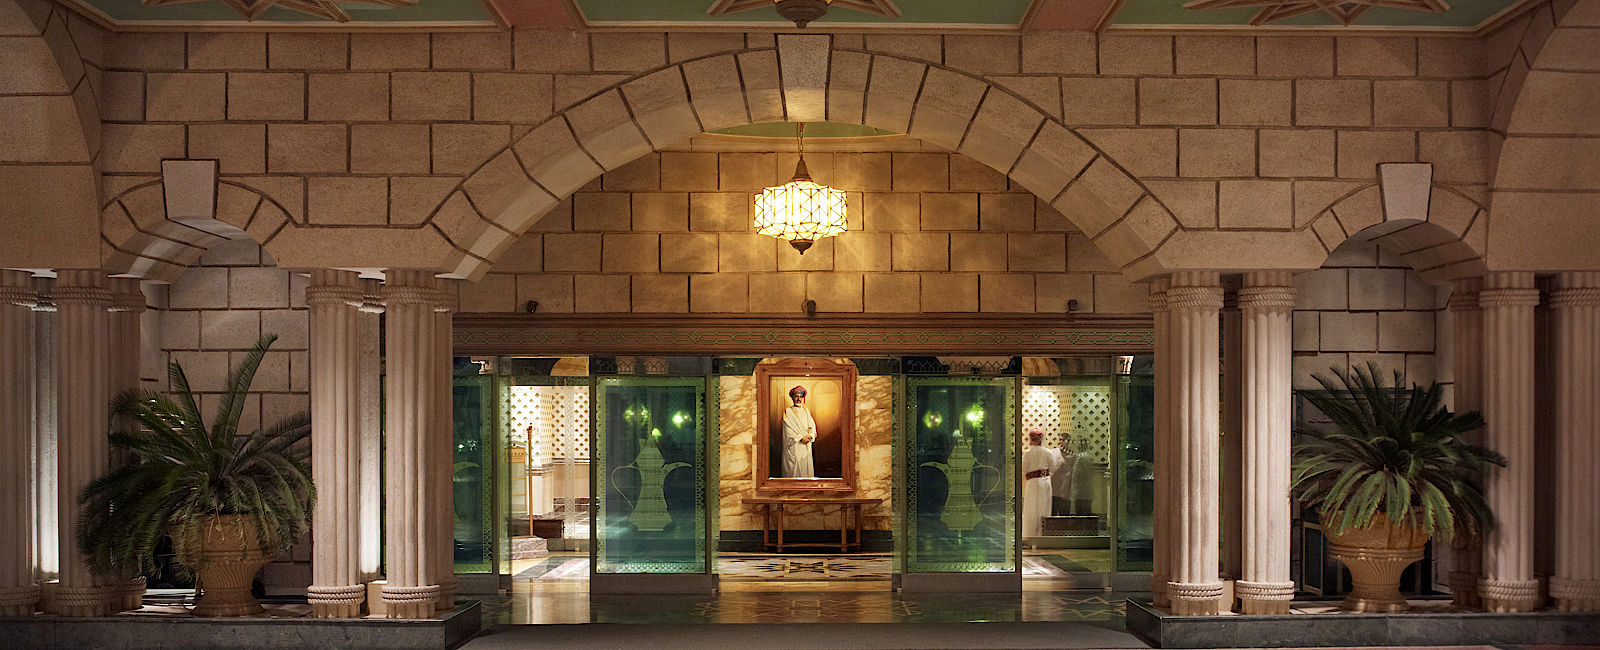 HOTELTEST
 Grand Hyatt Muscat 
 Opulent & Busy 